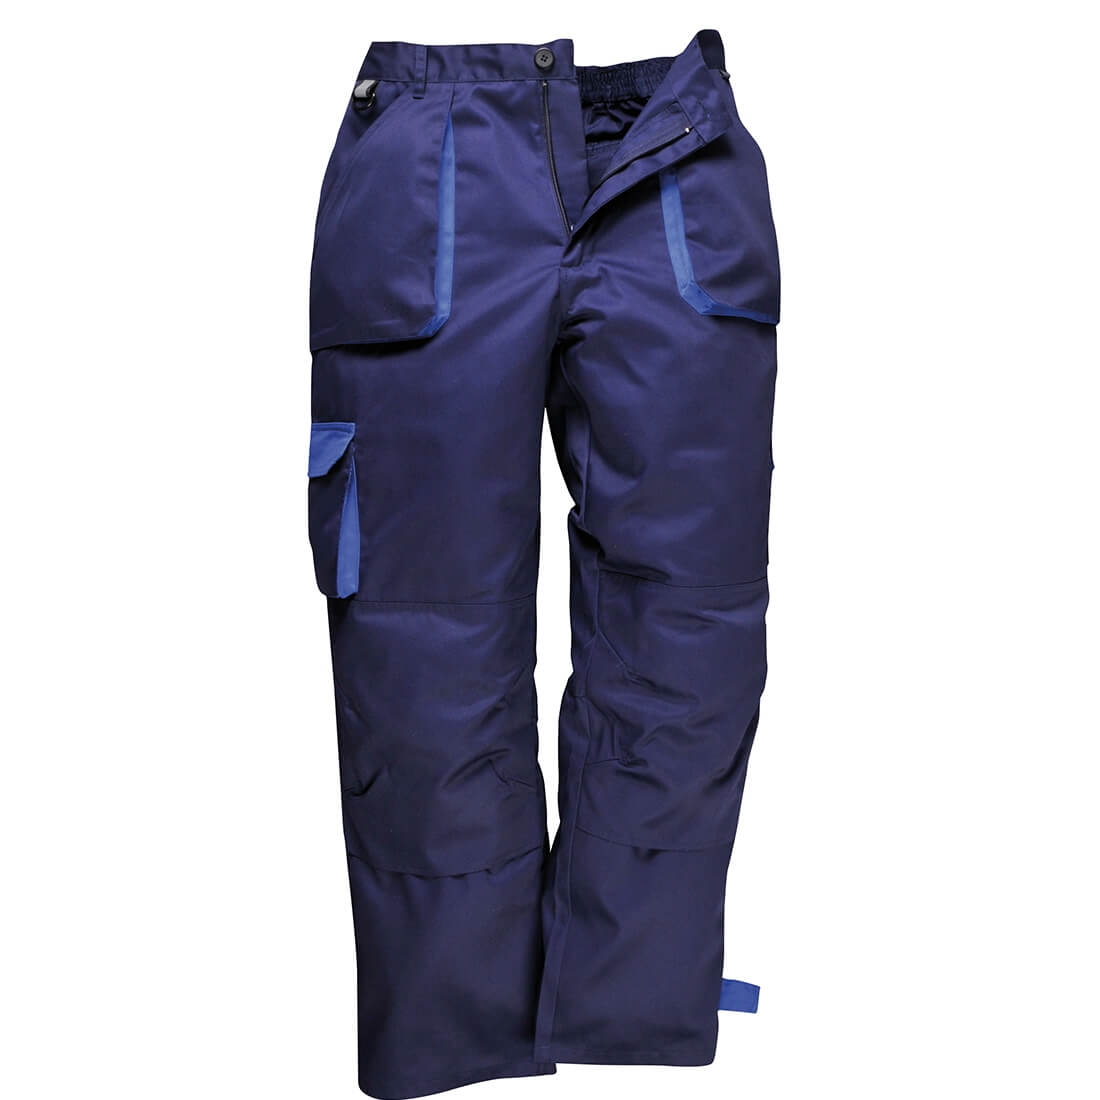 Pantalon Portwest Texo Contrasté matelassé - Les vêtements de protection